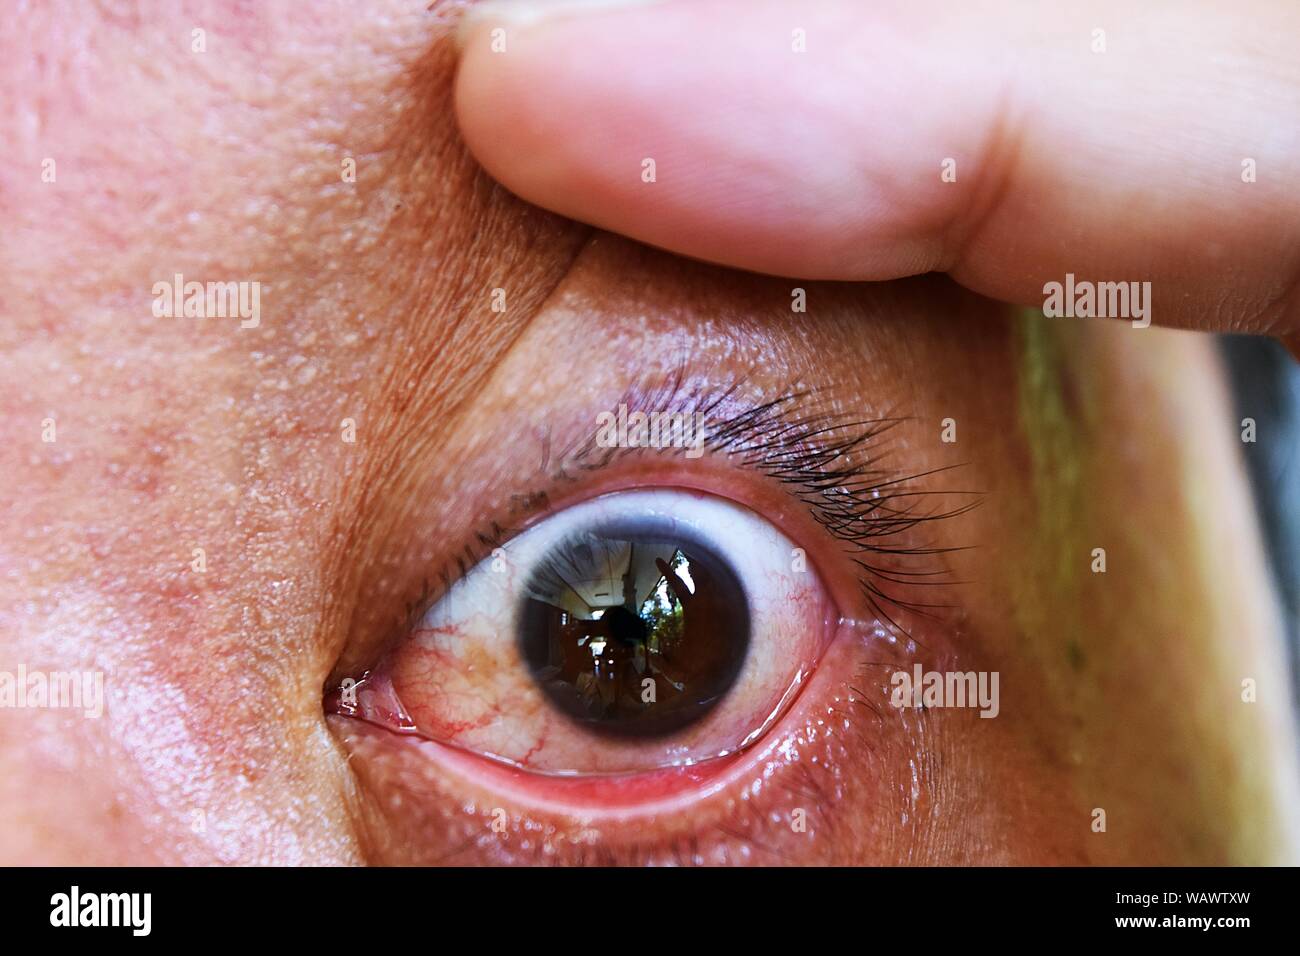 Ouvrez les doigts les yeux ouverts et révèle de nombreux capillaires rouges sur le globe oculaire qui peut être malade , Close - up Scary eye of Asian men Banque D'Images